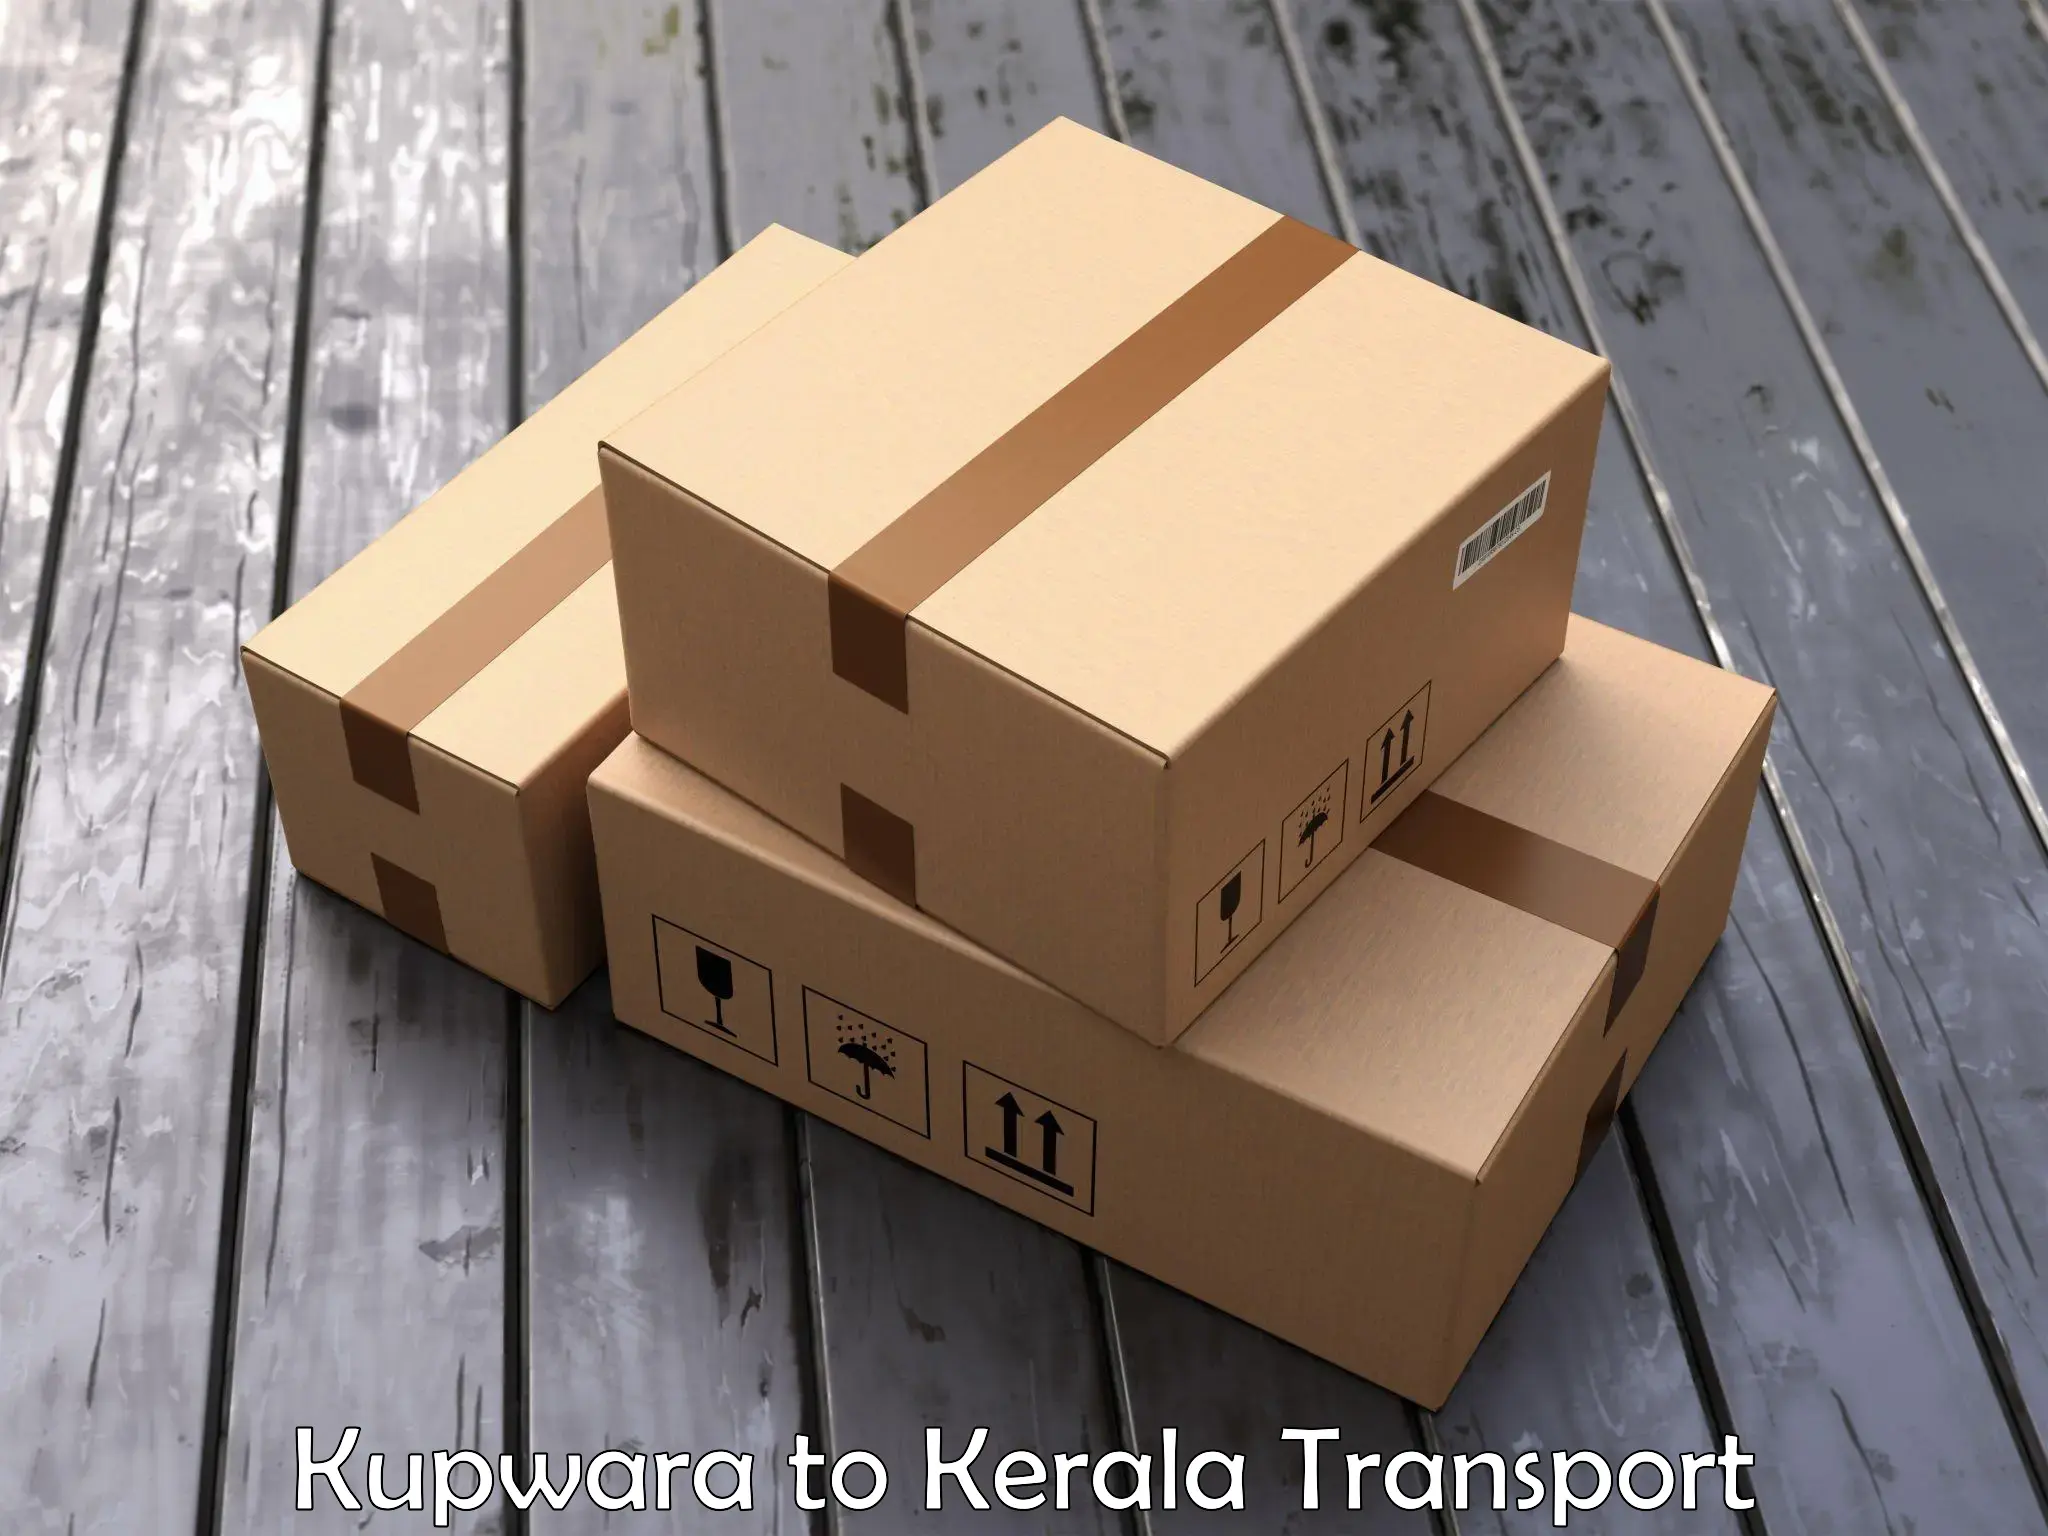 Furniture transport service in Kupwara to Nileshwar